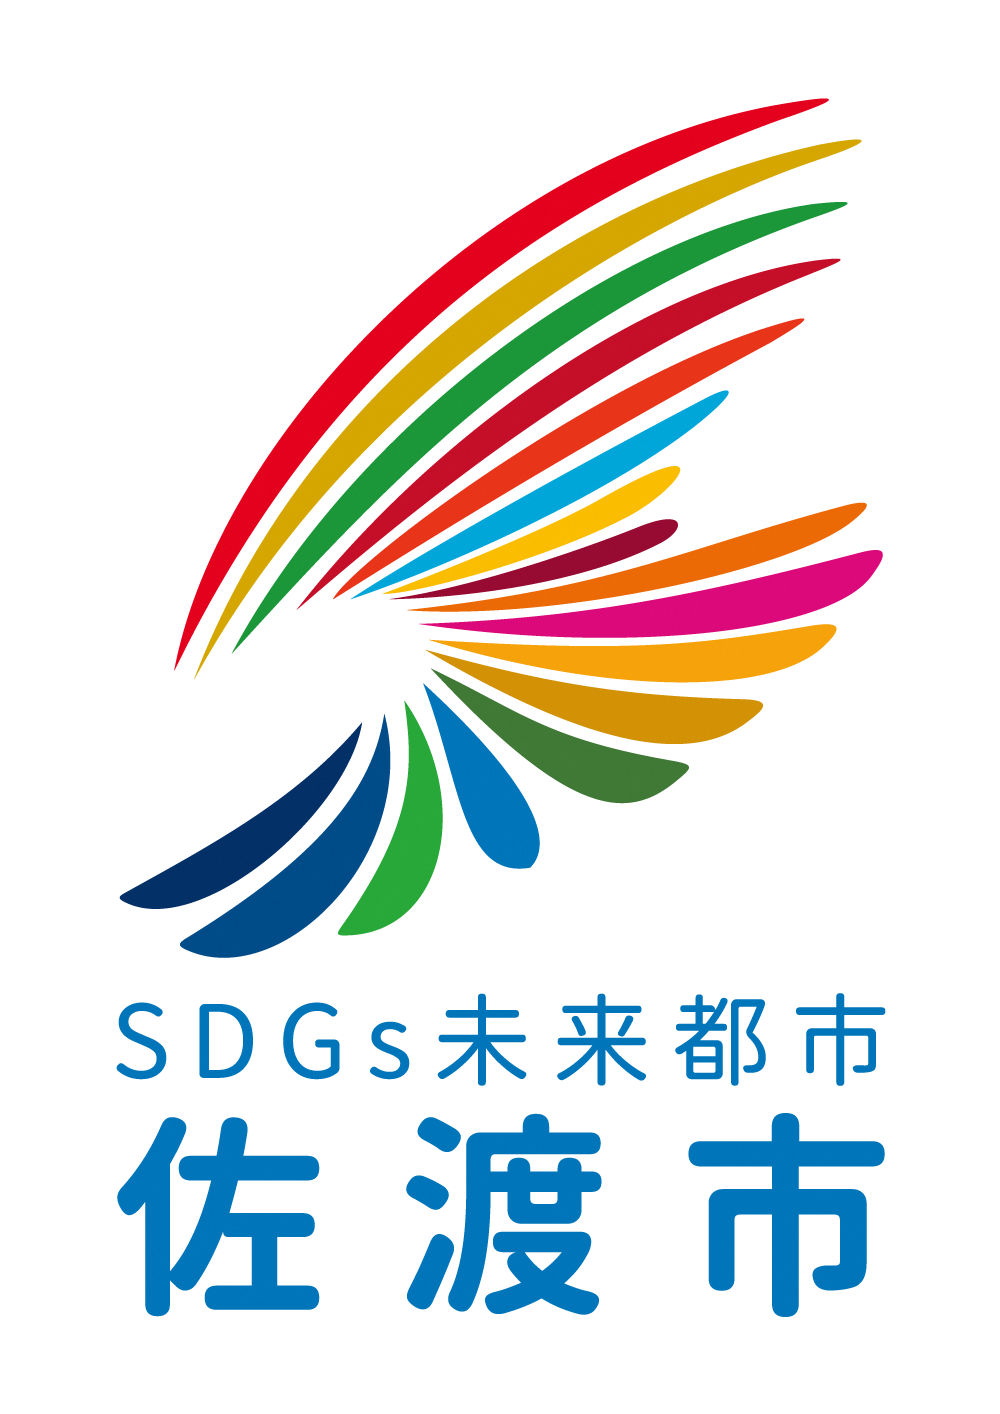 【】佐渡SDGsパートナーの認定証が届きました